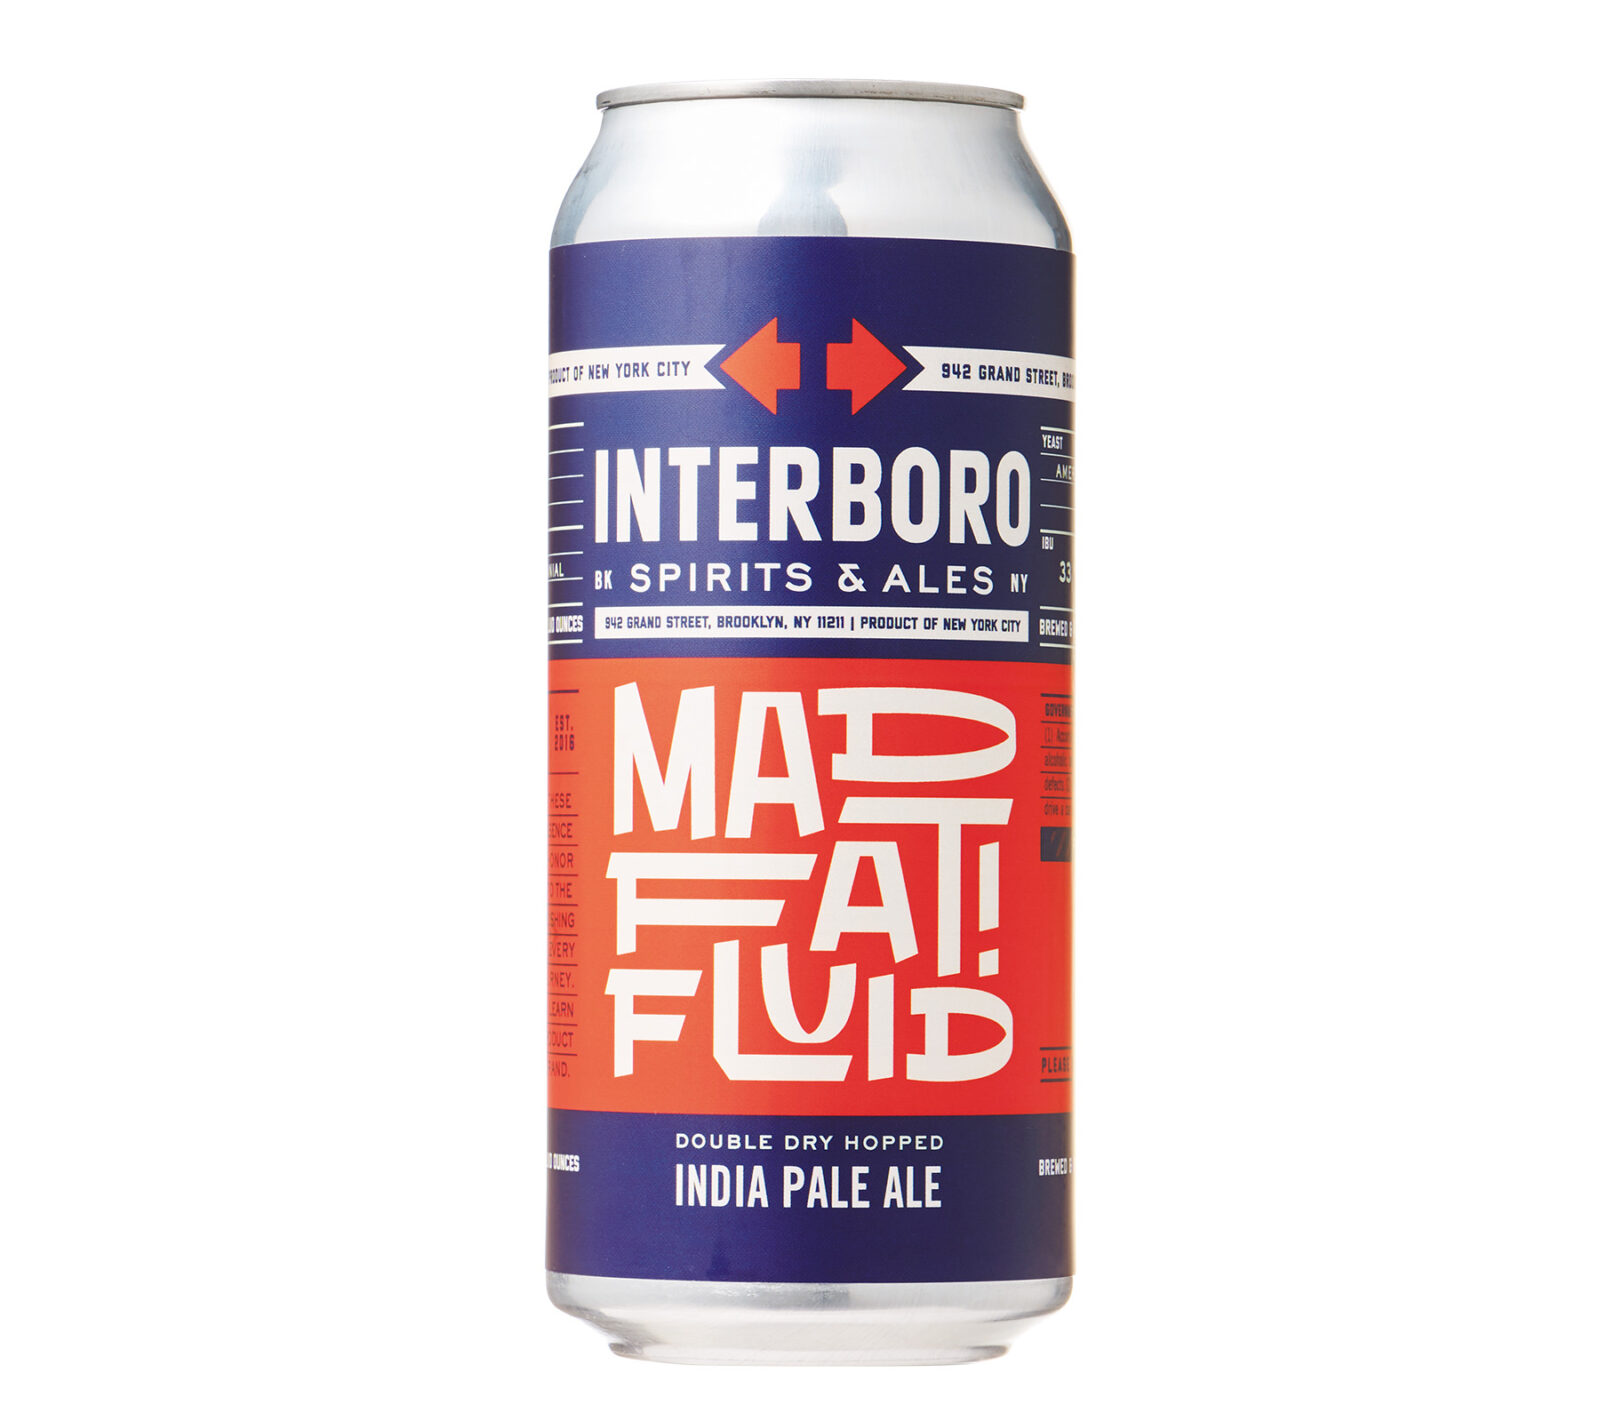 Interboro Spirits & Ales（アメリカ）のMad Fat Fluid（マッド ファット フルーイッド）